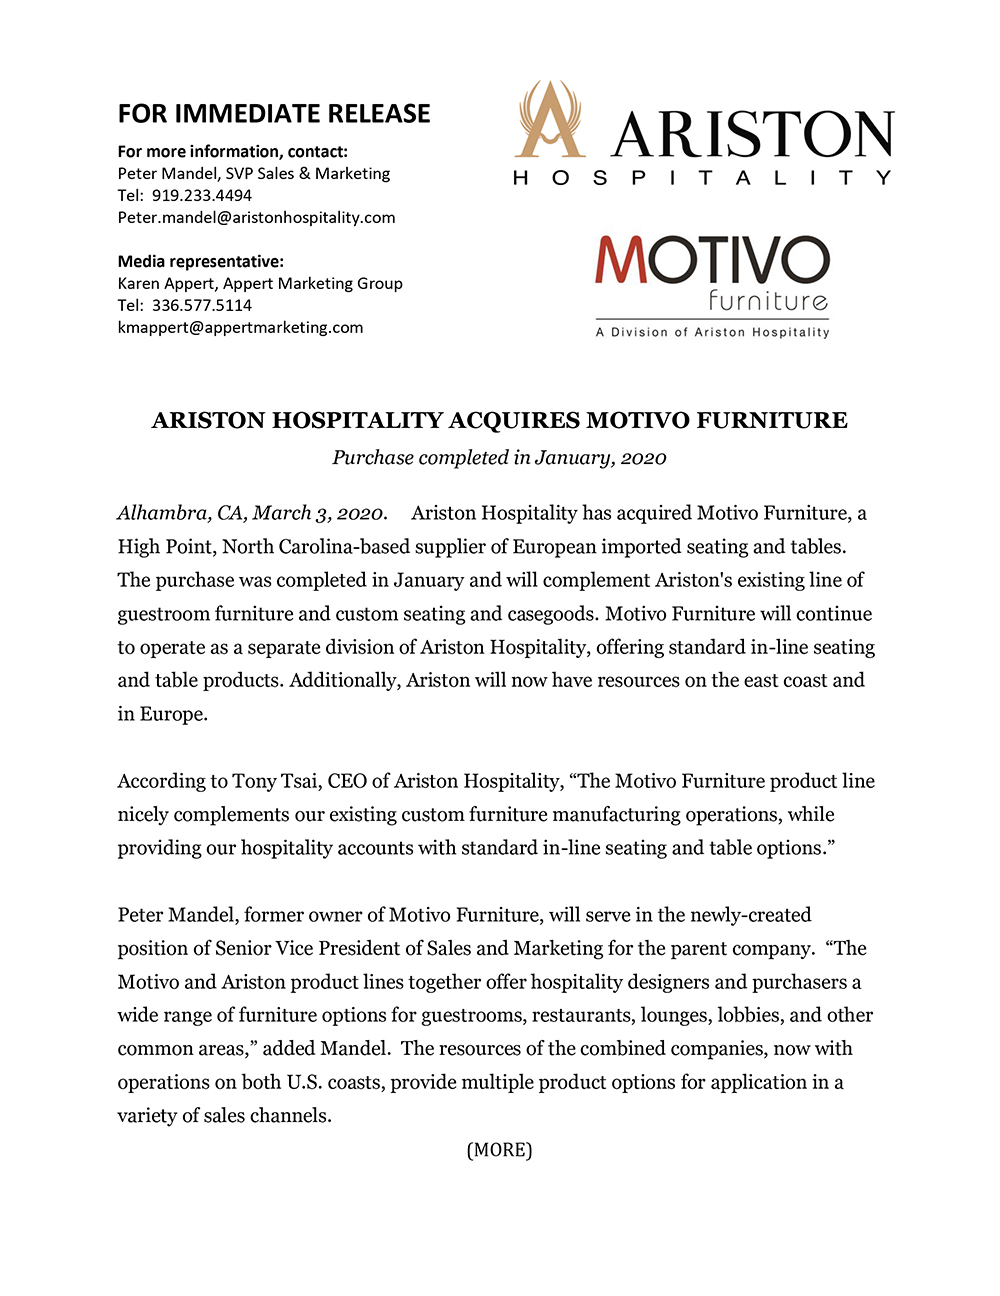 Ariston Hospitality Acquires Motivo Furniture Press Release